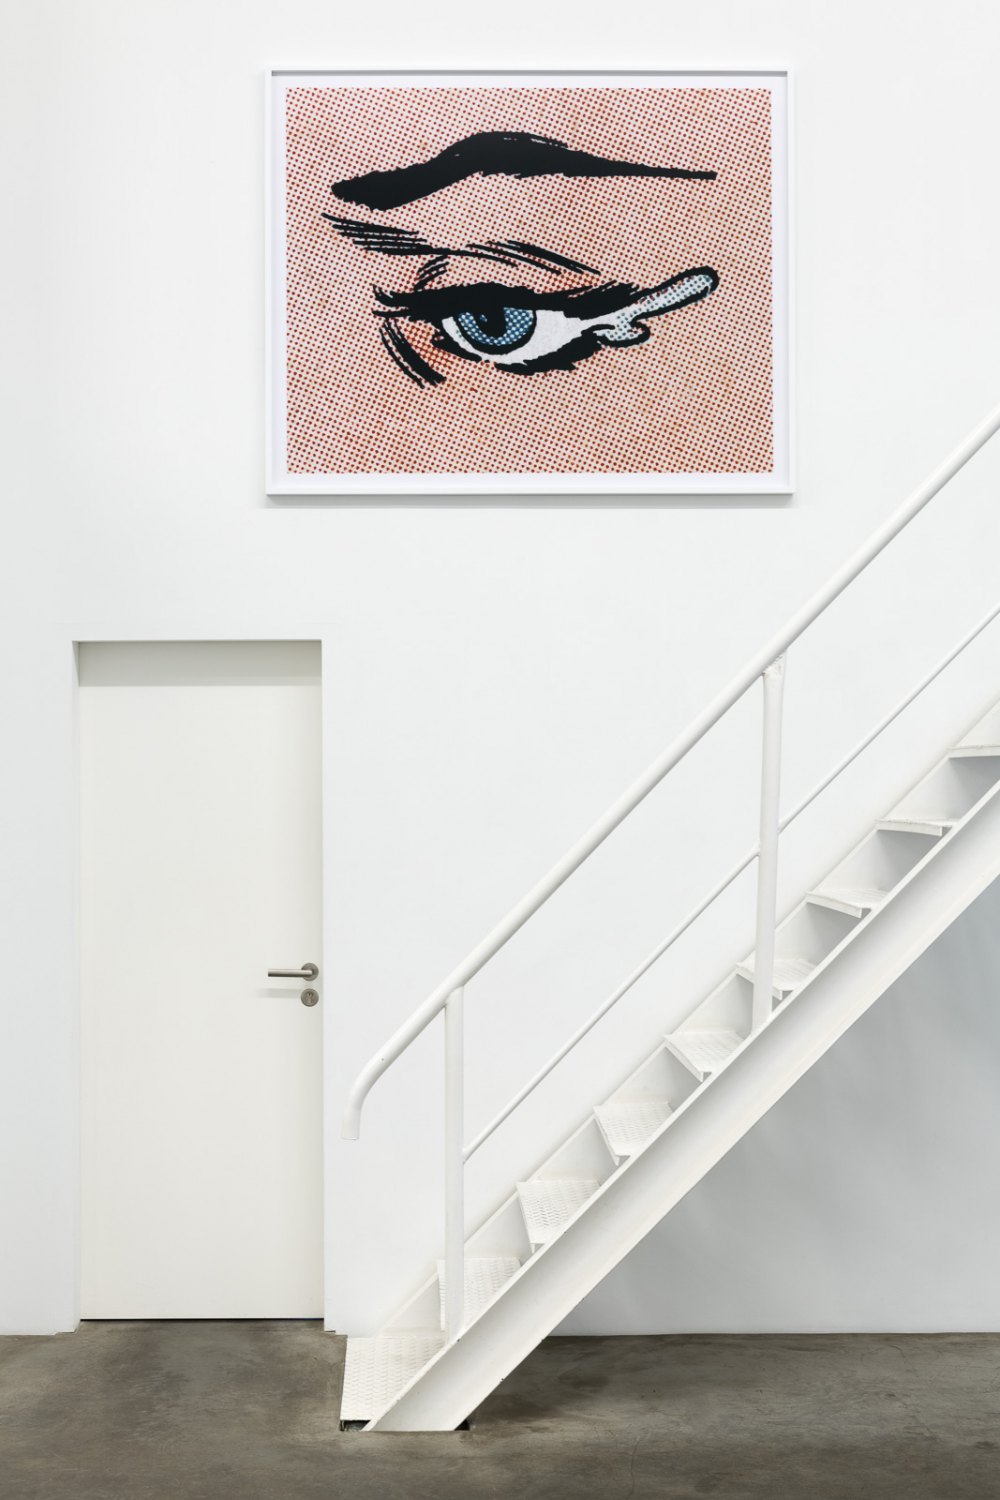 Installation View, Anne Collier, Galerie Neu, 2019